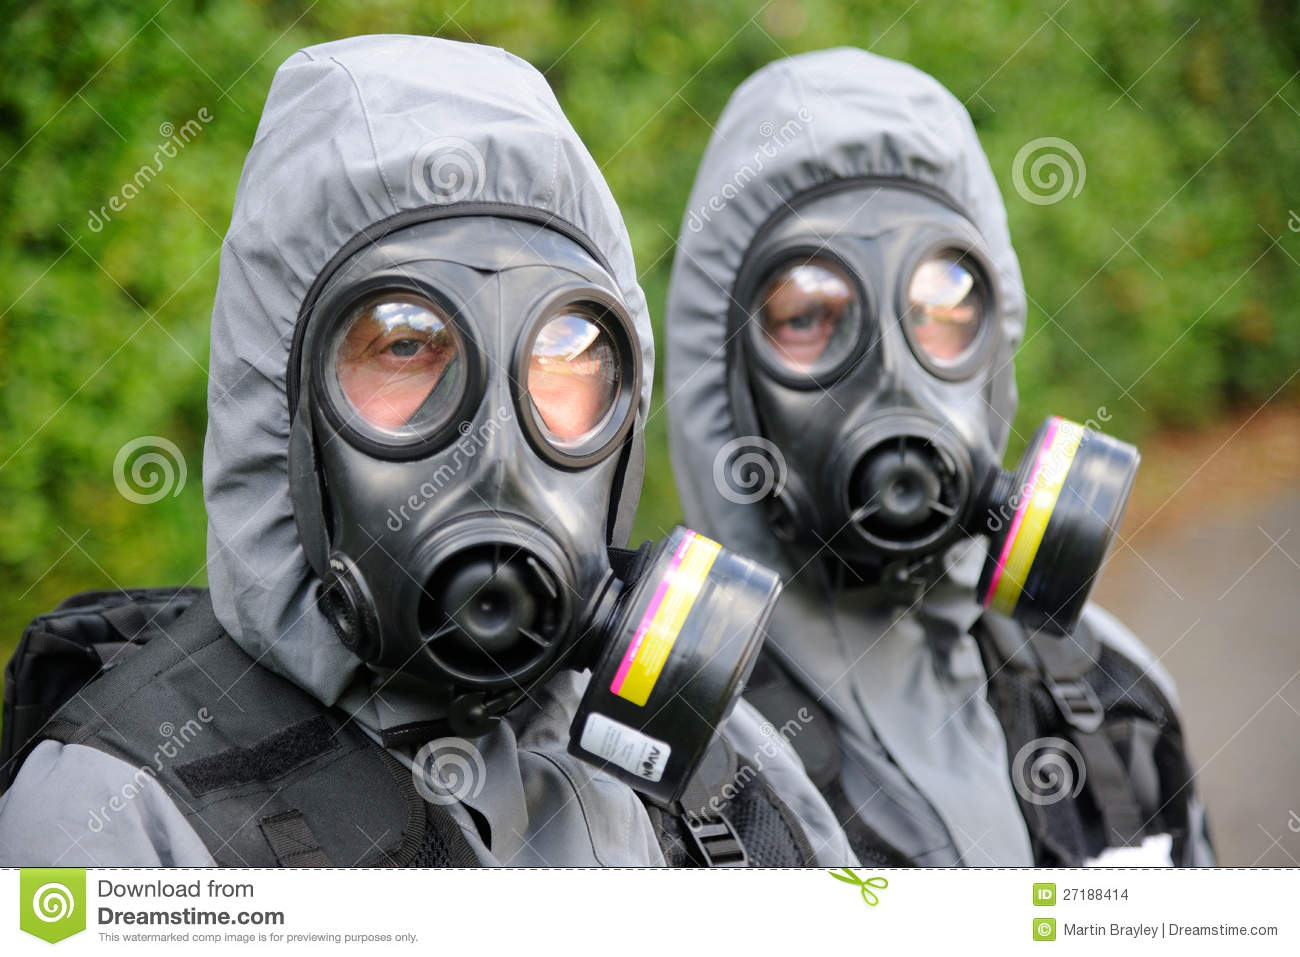 swat-officers-gas-masks-27188414.jpg